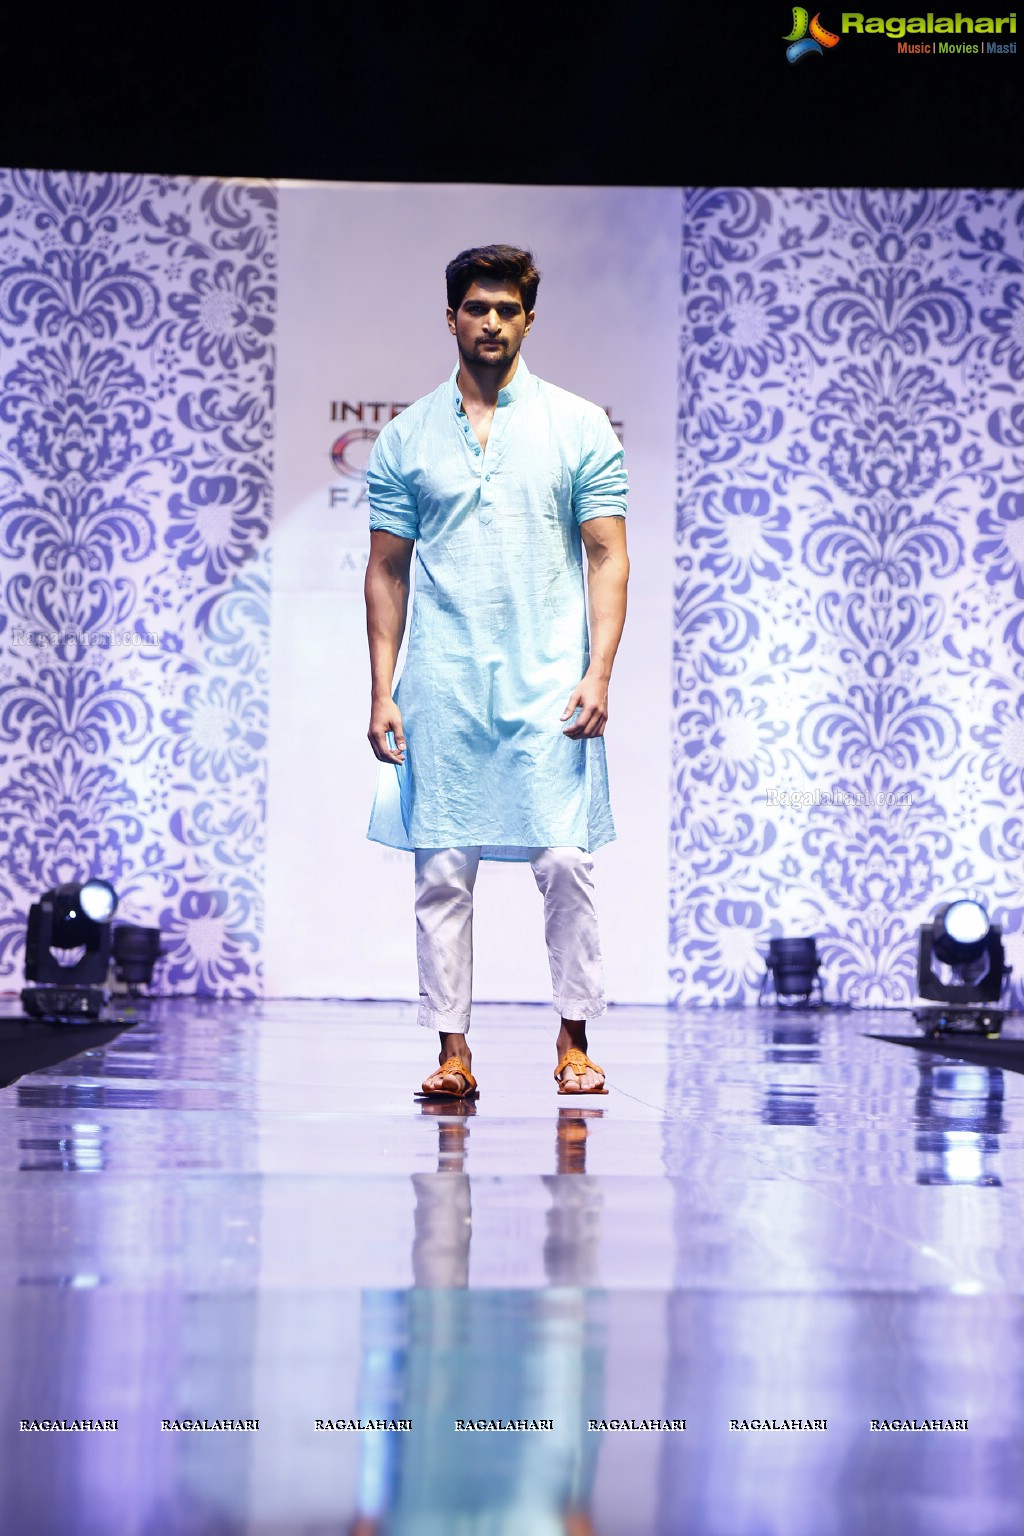 The International Glam Fashion Week 2016 (Day 2), Hyderabad	